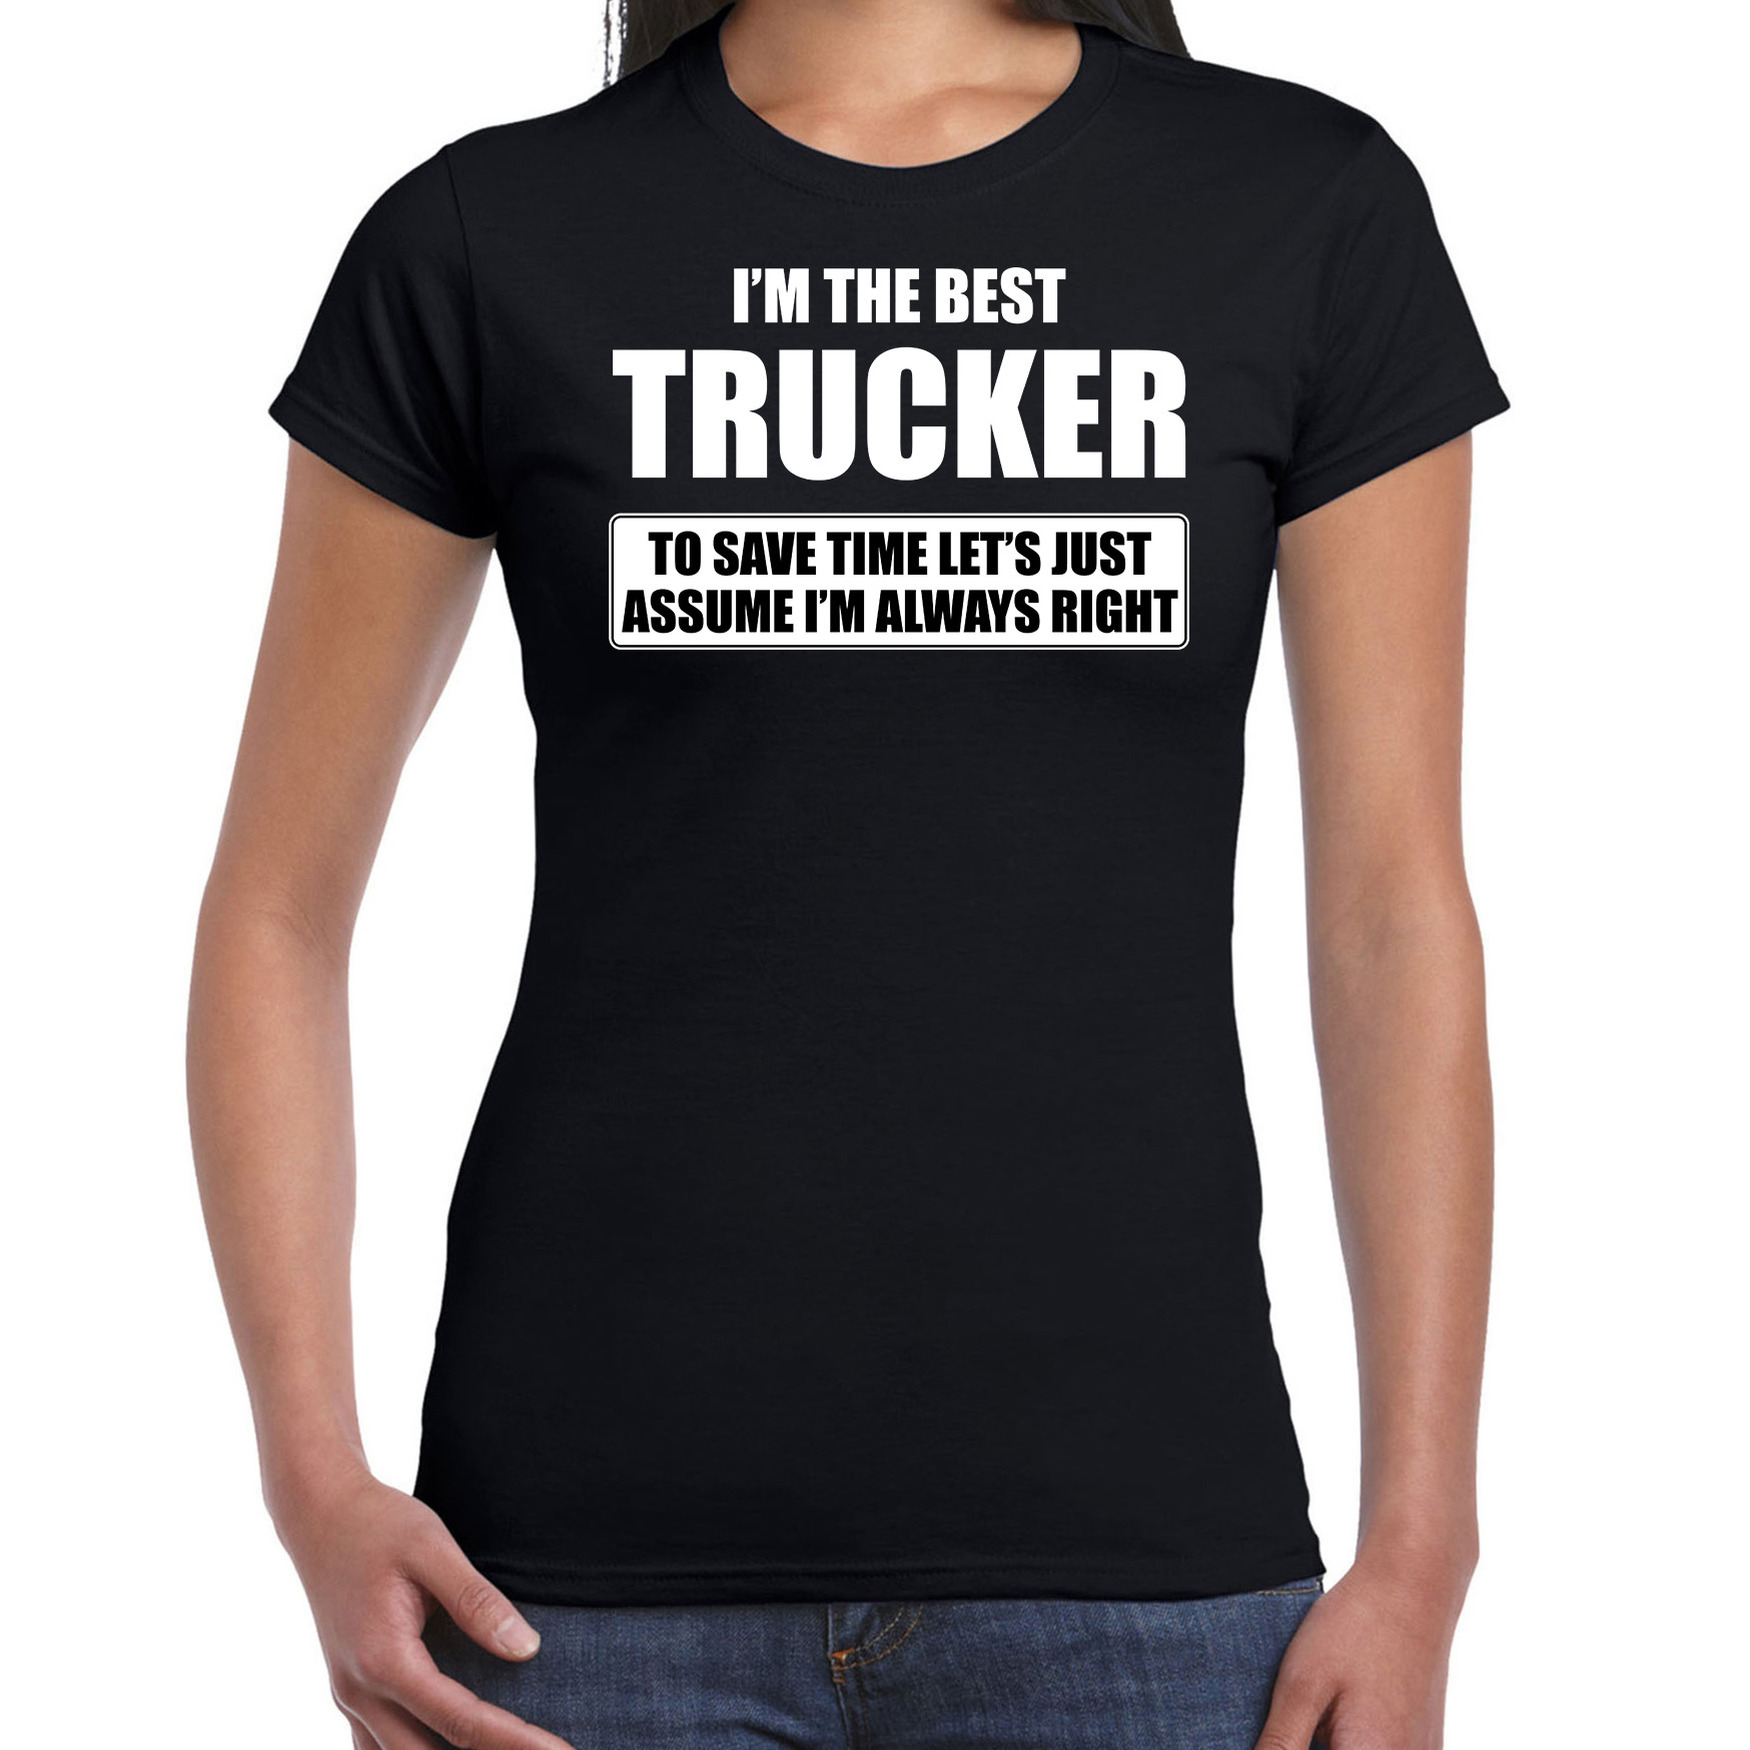 I'm the best trucker t-shirt zwart dames De beste vrachtwagenchauffeur cadeau